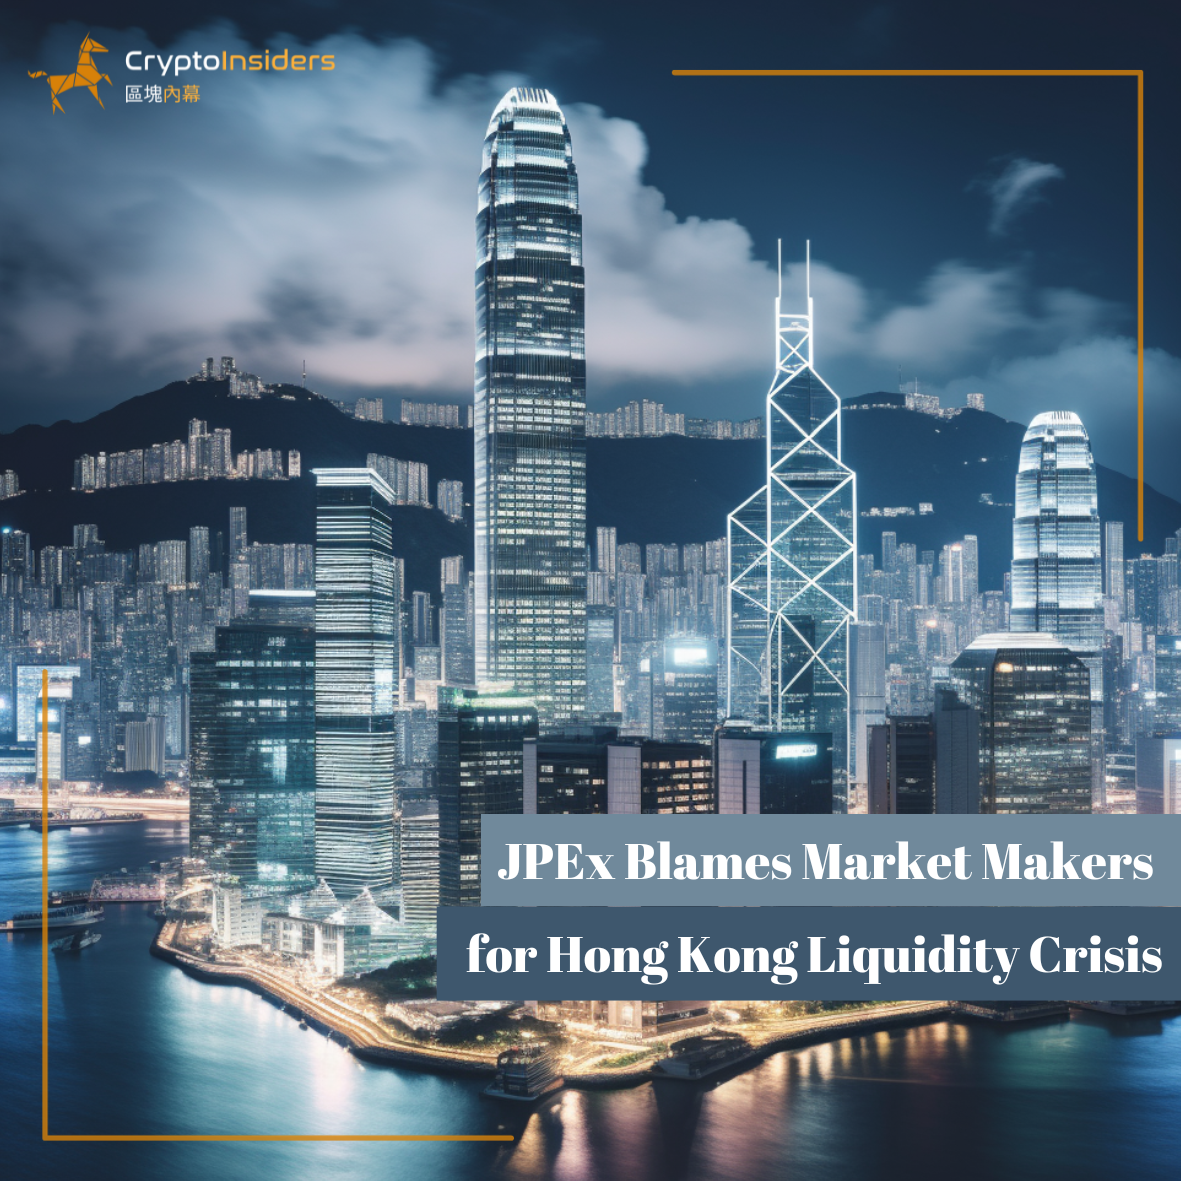 JPEx-Blames-Market-Makers-for-Hong-Kong-Liquidity-Crisis-Crypto-Insiders-Hong-Kong-Blockchain-News